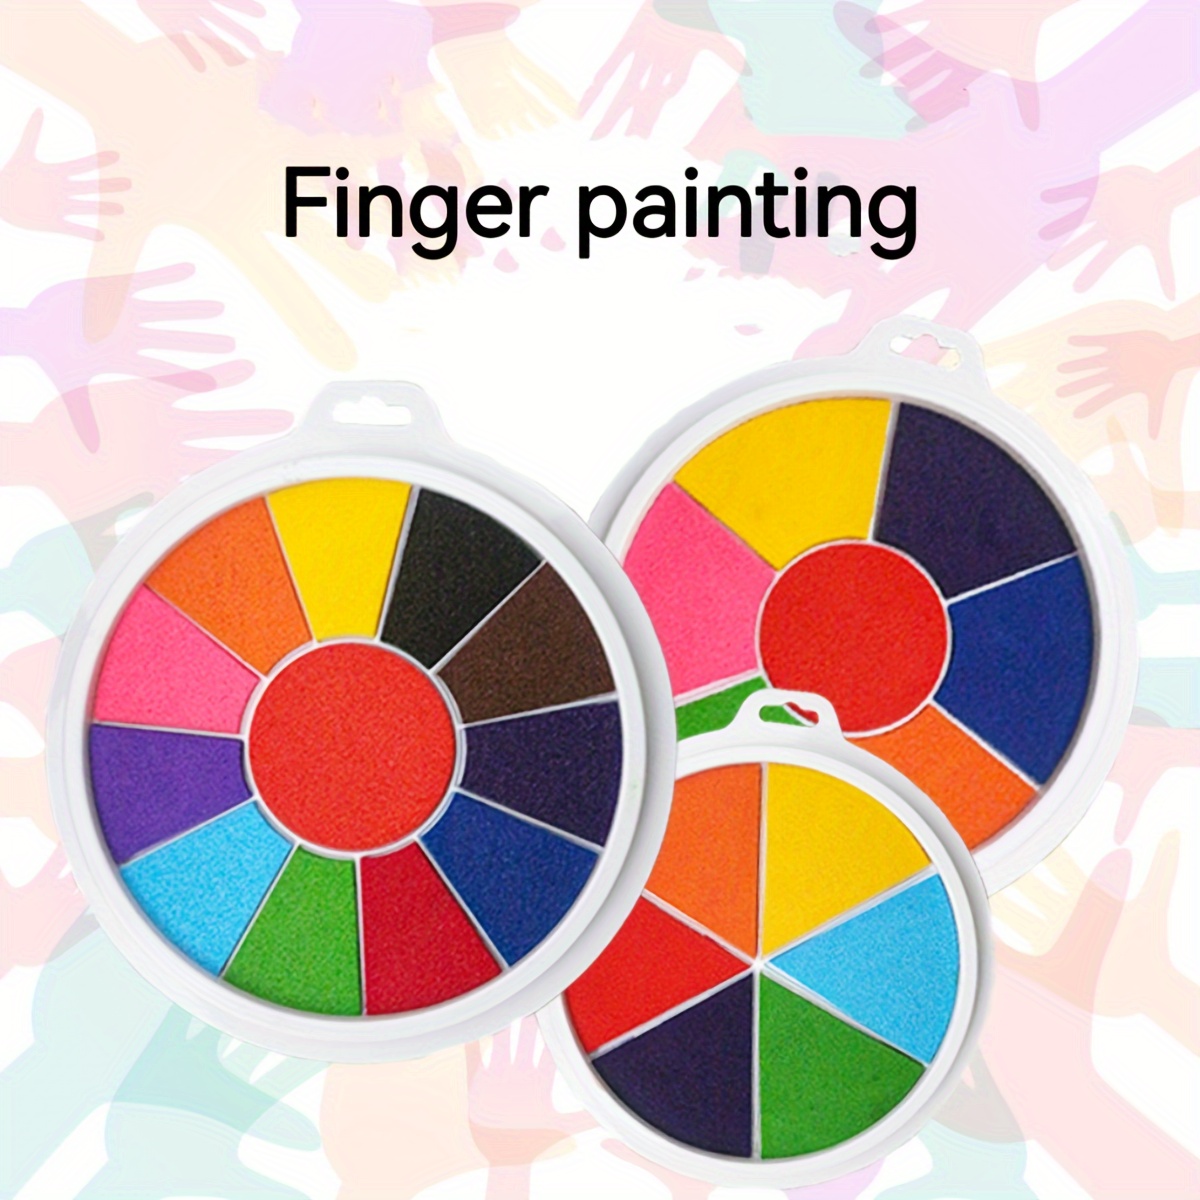  Divertido kit de pintura de dedos y libro, 12 colores lavables para  niños pequeños, pinturas no tóxicas para niños, suministros de pintura para  dibujar pintura de dedos para niños pequeños de